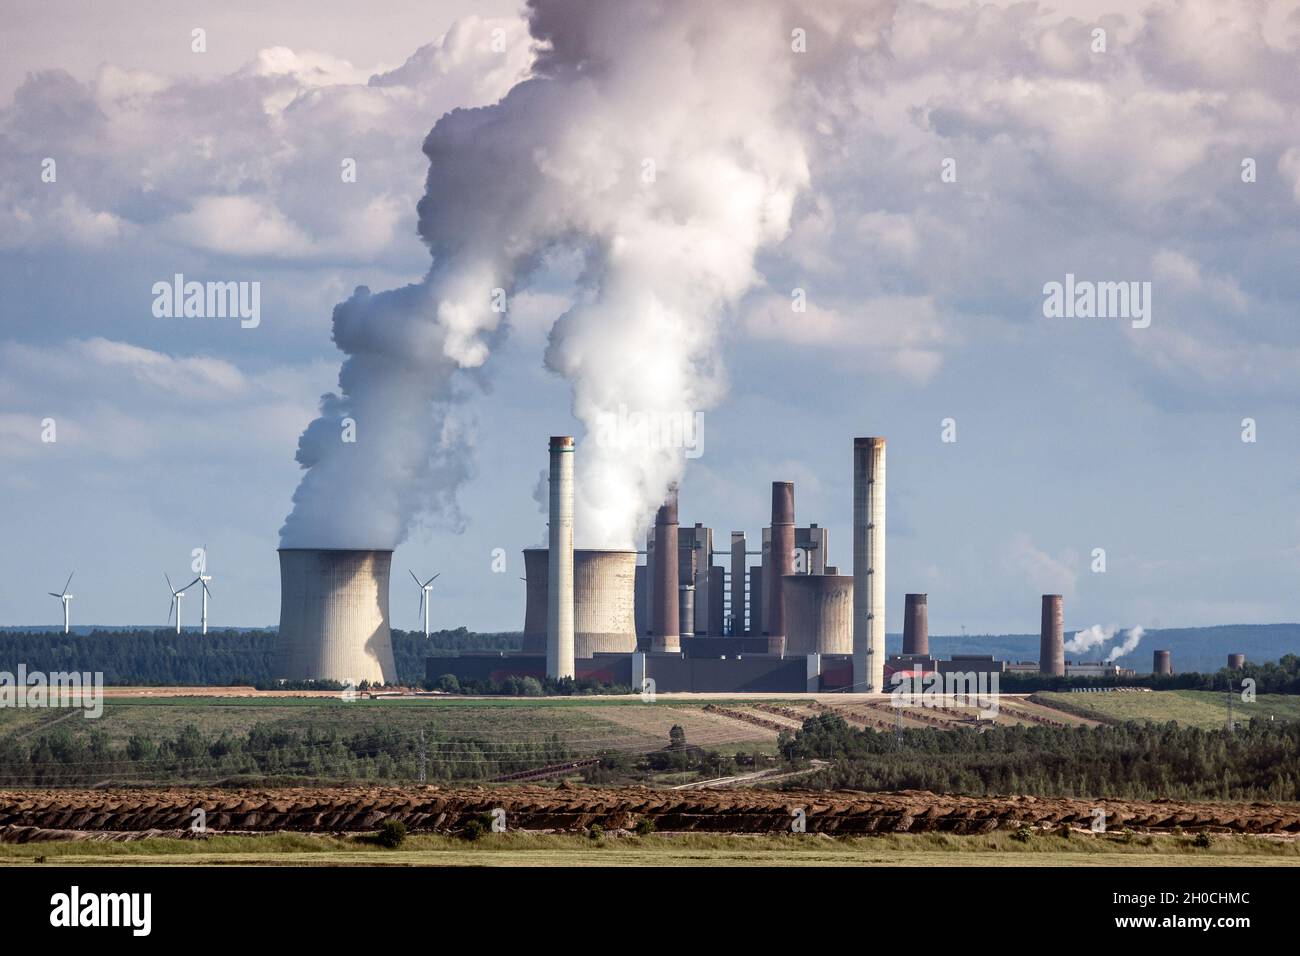 Las emisiones de la chimenea de la fábrica de la planta de energía causan la contaminación del aire Foto de stock